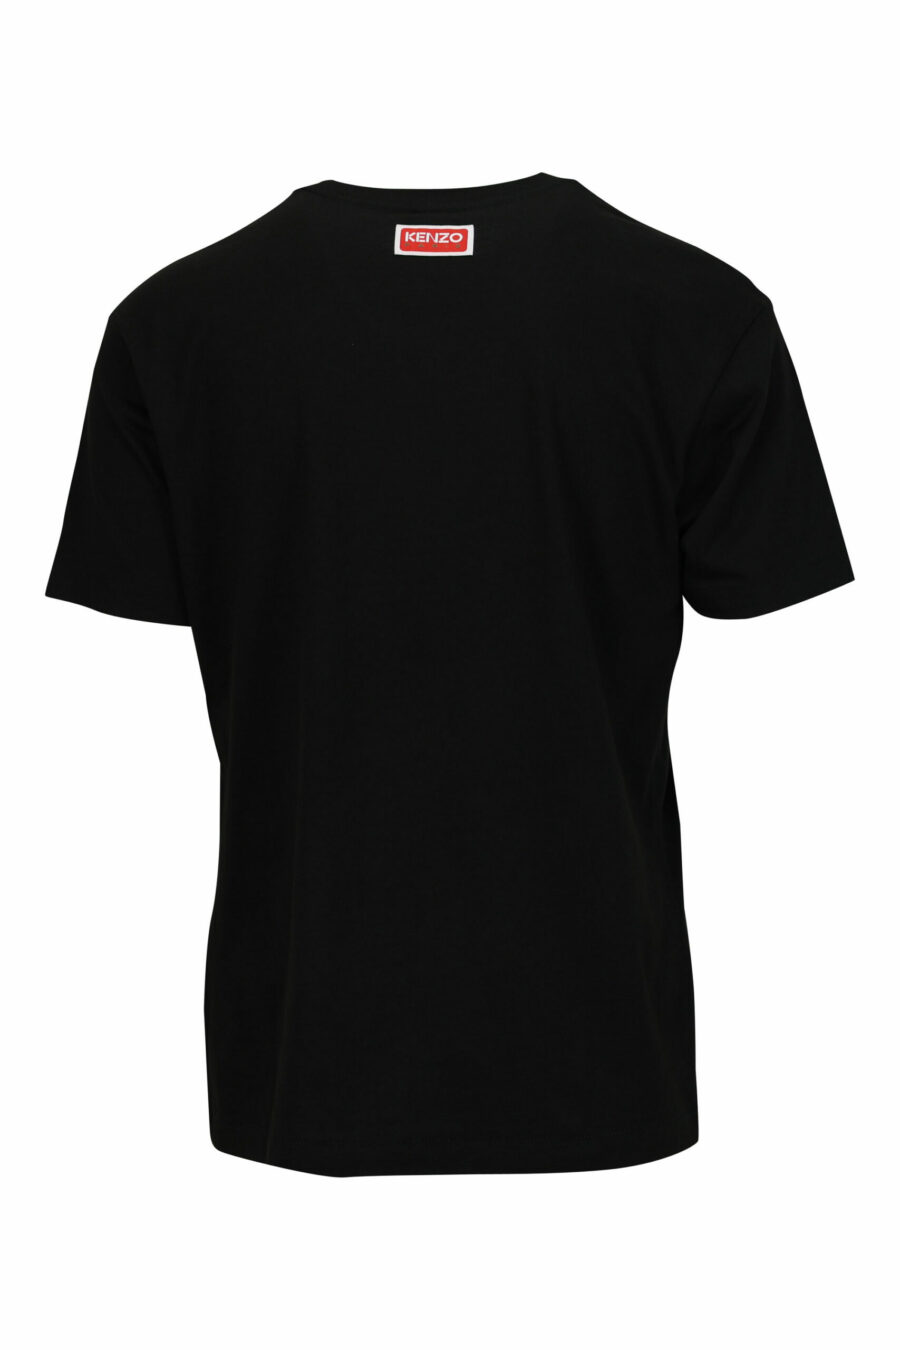 Oversize black T-shirt with large elephant embossed logo - 3612230568839 1 scaled